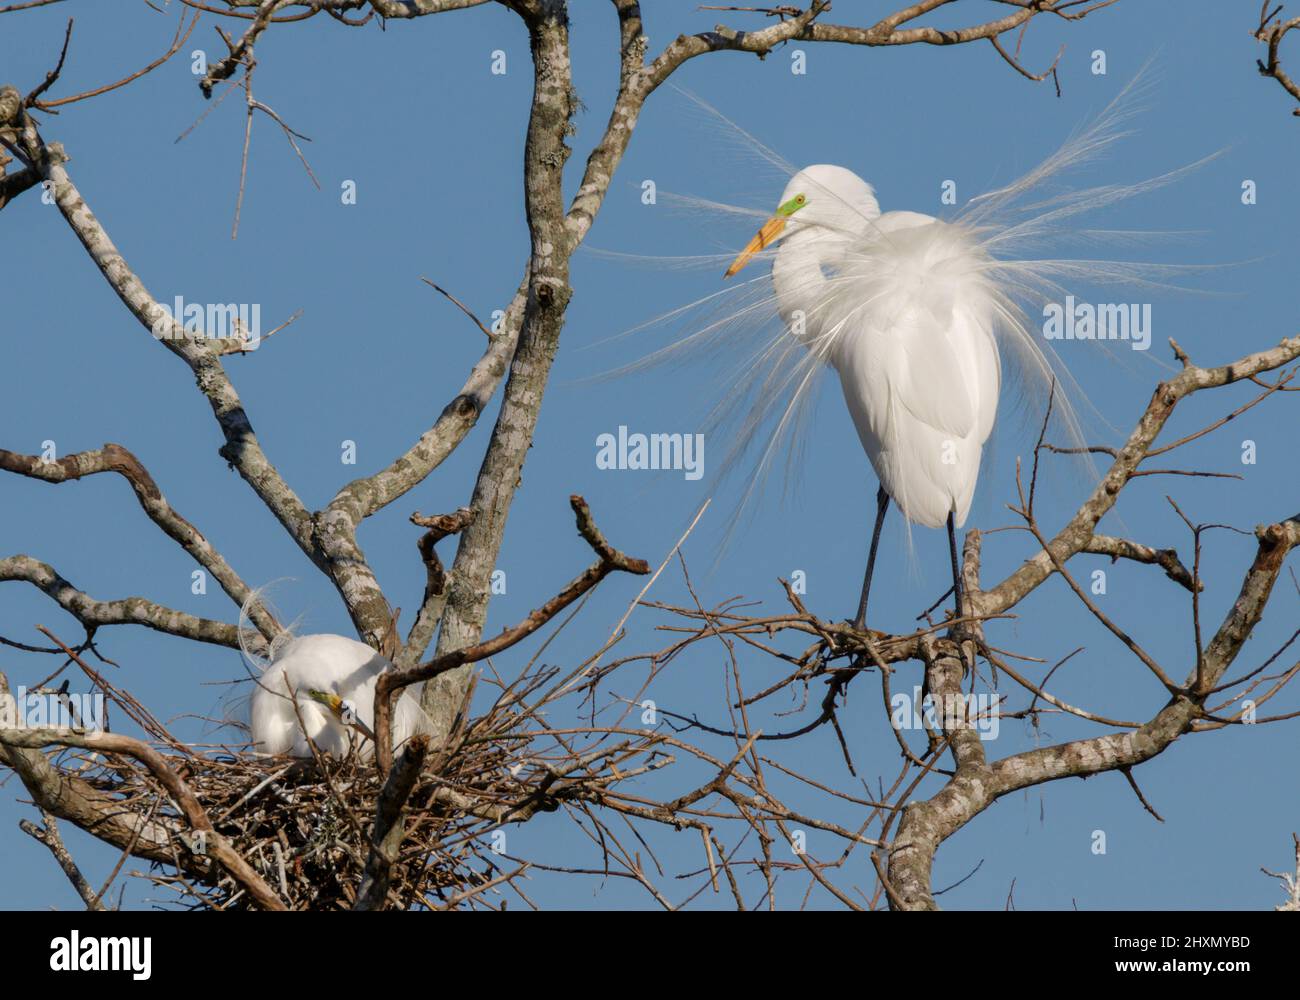 Silberreiher (Ardea alba), das während der Brutsaison in der Nähe des Nestes Brutgefieder zeigt, Alvin, Texas, USA. Stockfoto